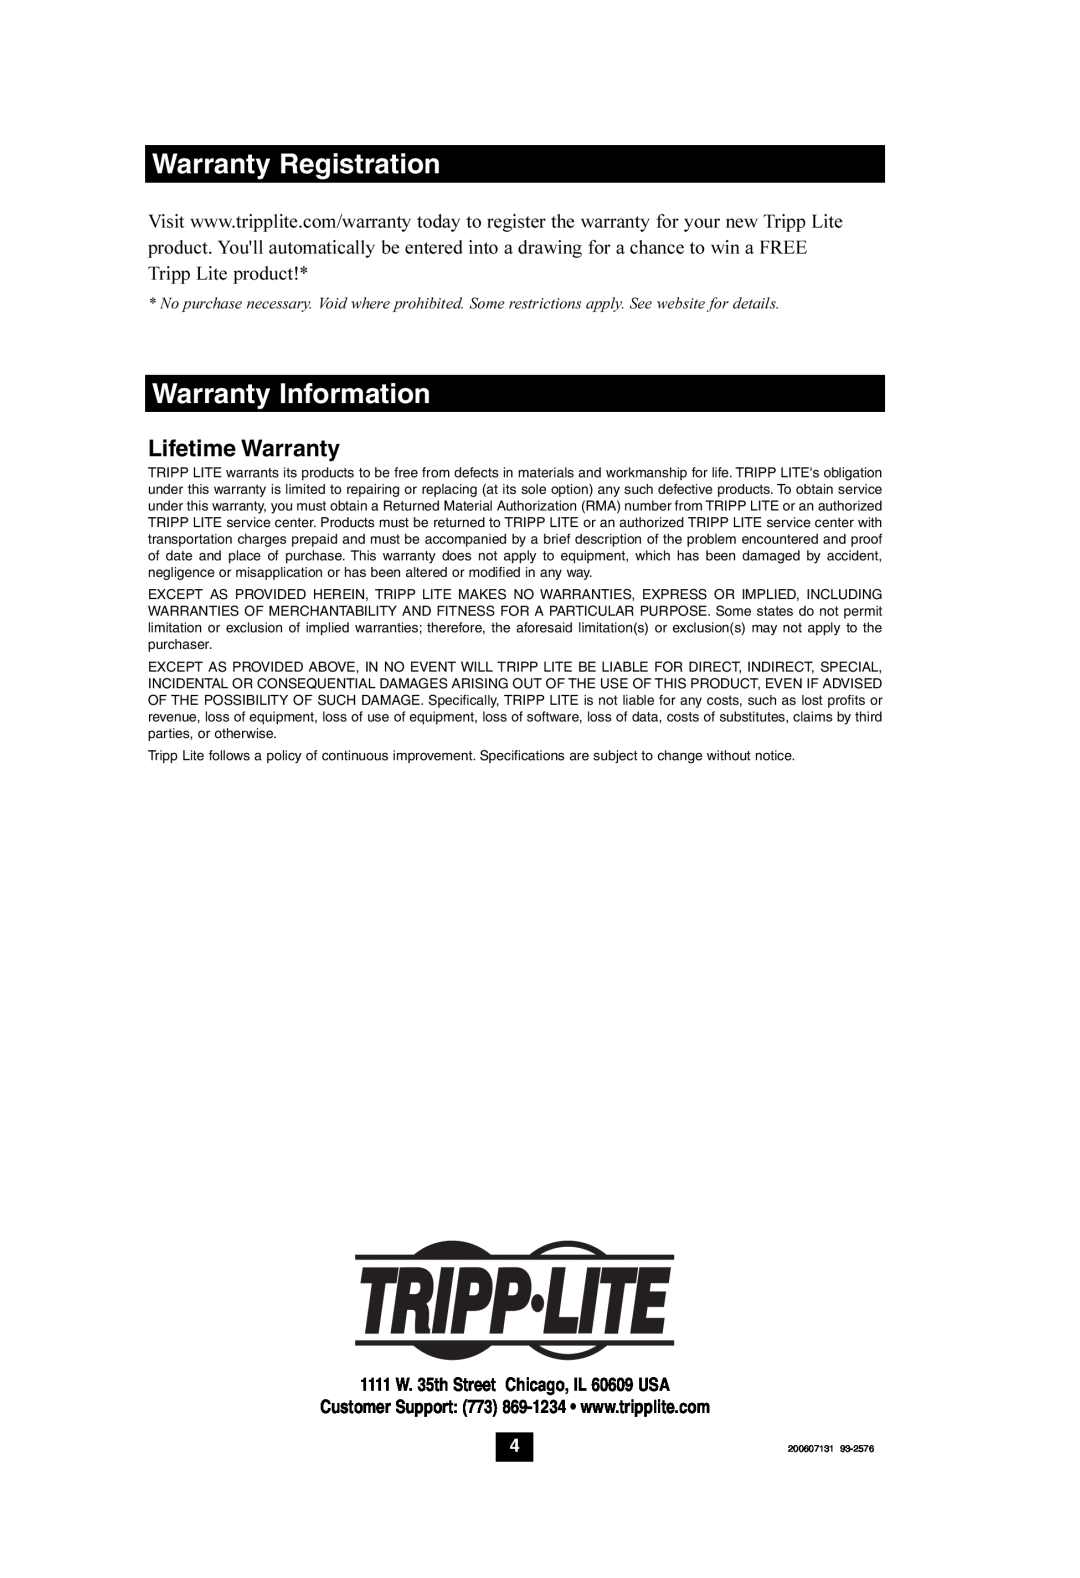 Tripp Lite UPS Communication Cable Kit owner manual Warranty Registration, Warranty Information, Lifetime Warranty 